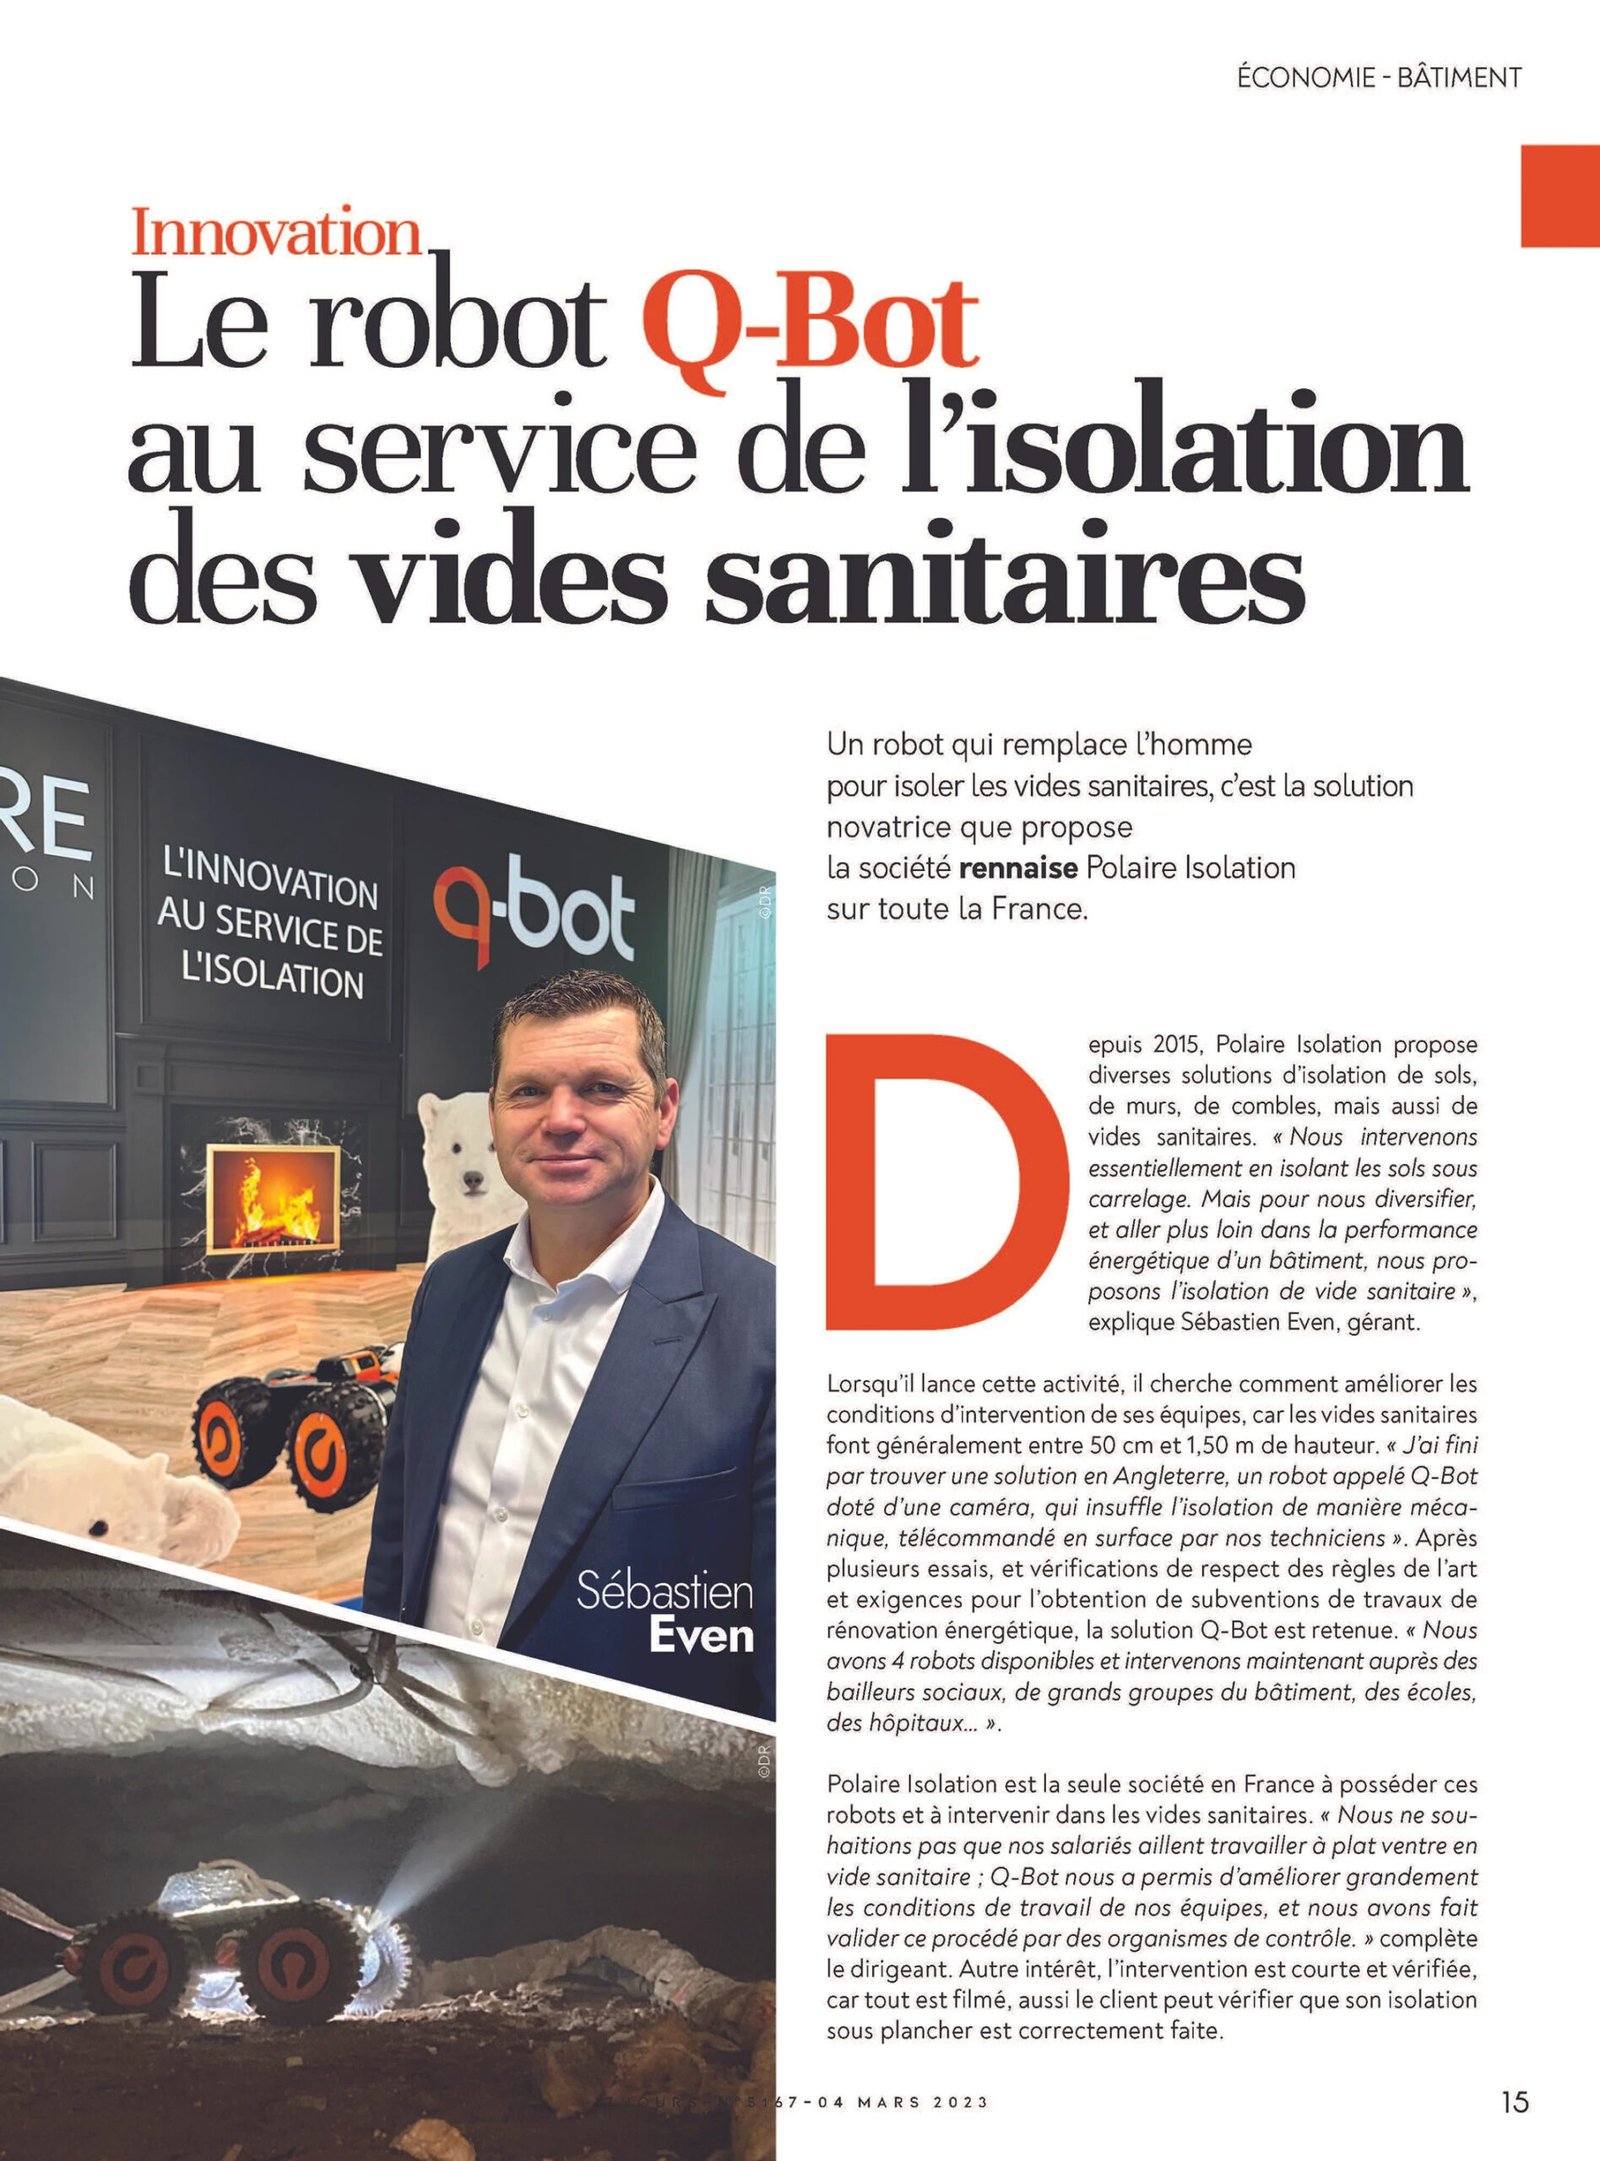 Le robot Q-Bot au service de l’isolation des vides sanitaires